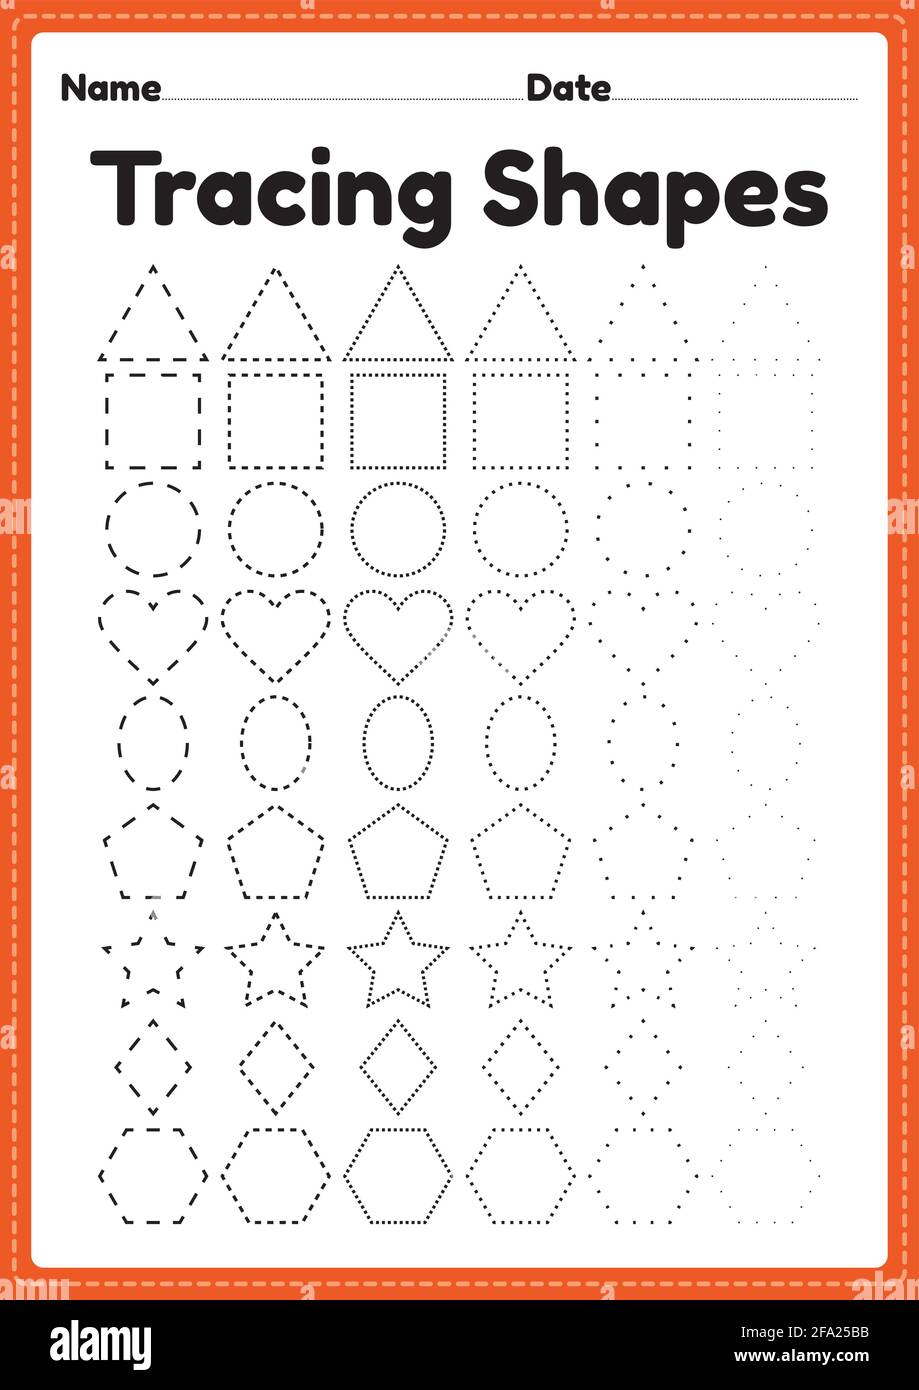 tracing-shapes-worksheet-for-kindergarten-and-preschool-kids-for